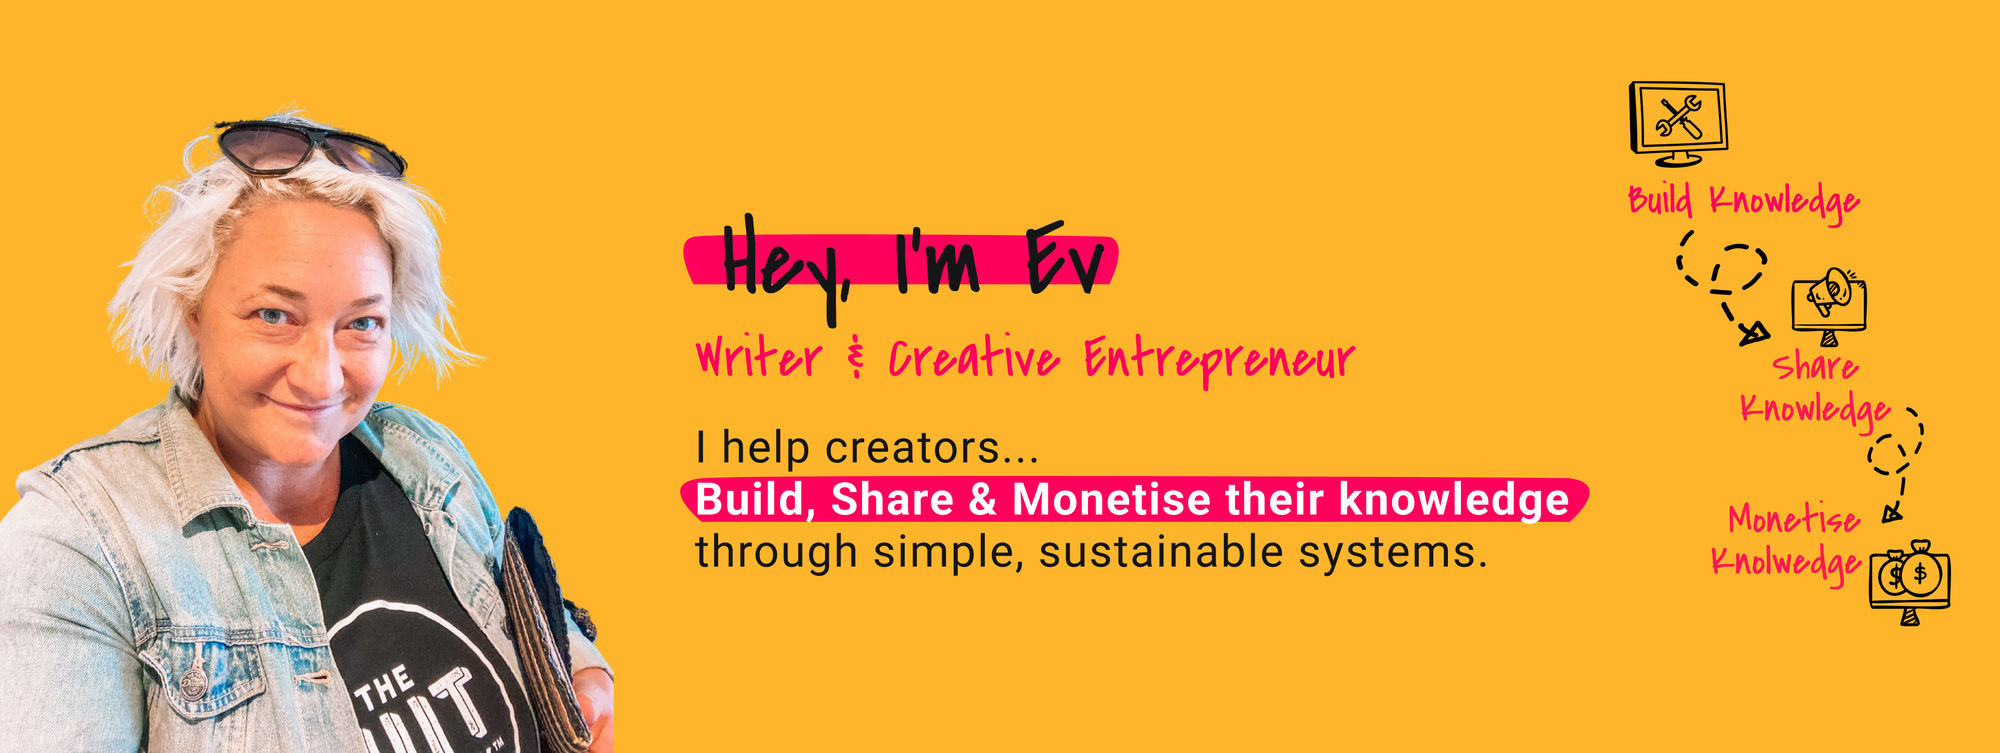 Ev Chapman | Writer & Creative Entrepreneur